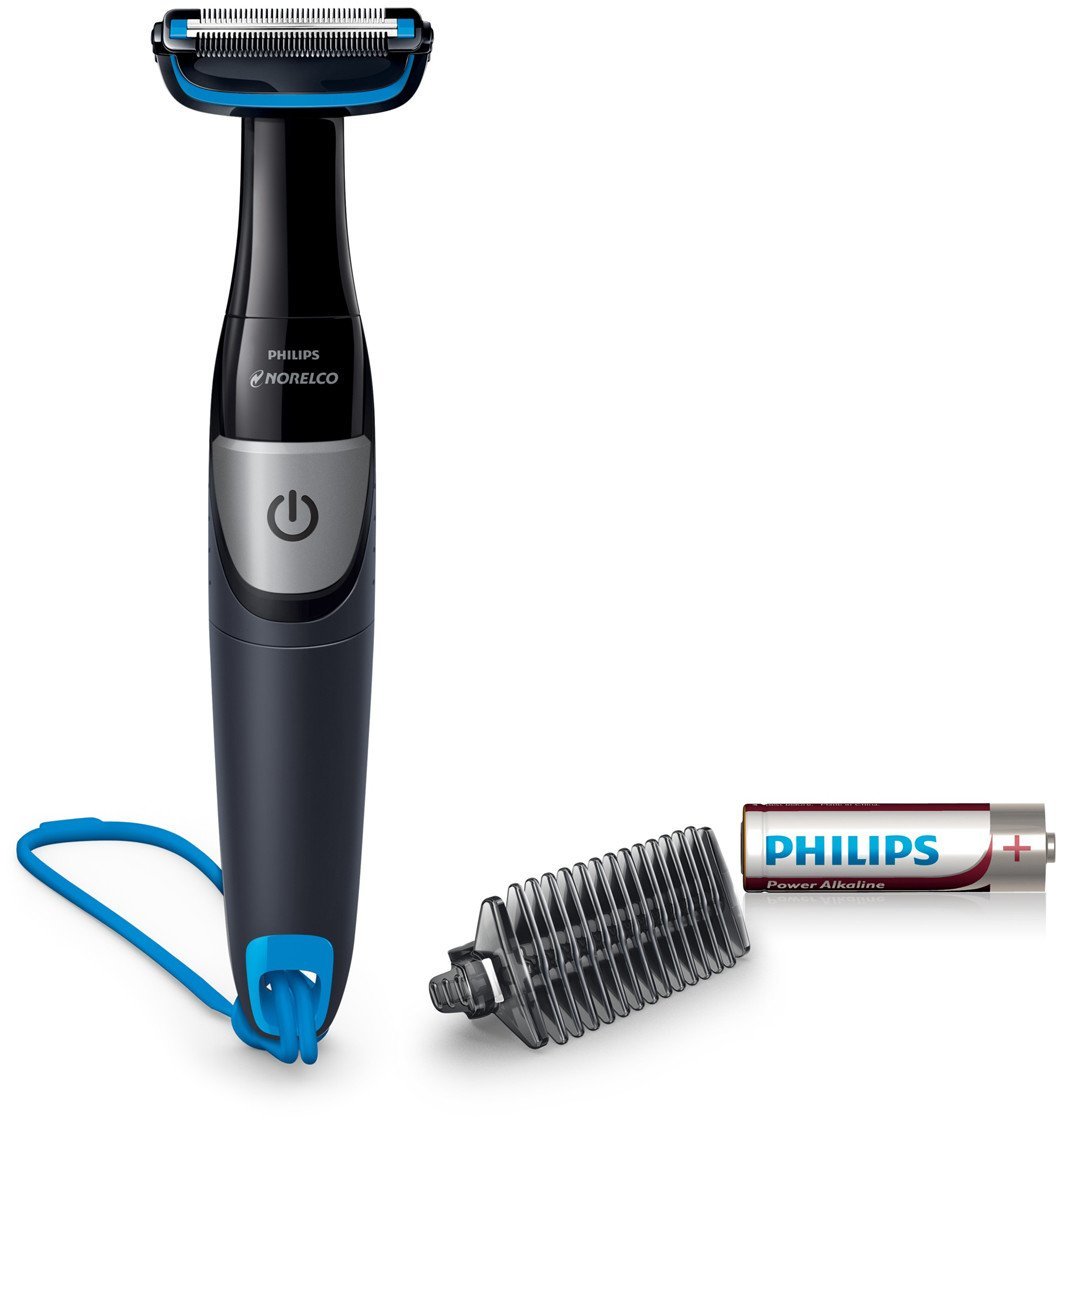 Showerproof Body Hair Trimmer And Groomer For Men, Bg1026/60, From Philips - $39.95